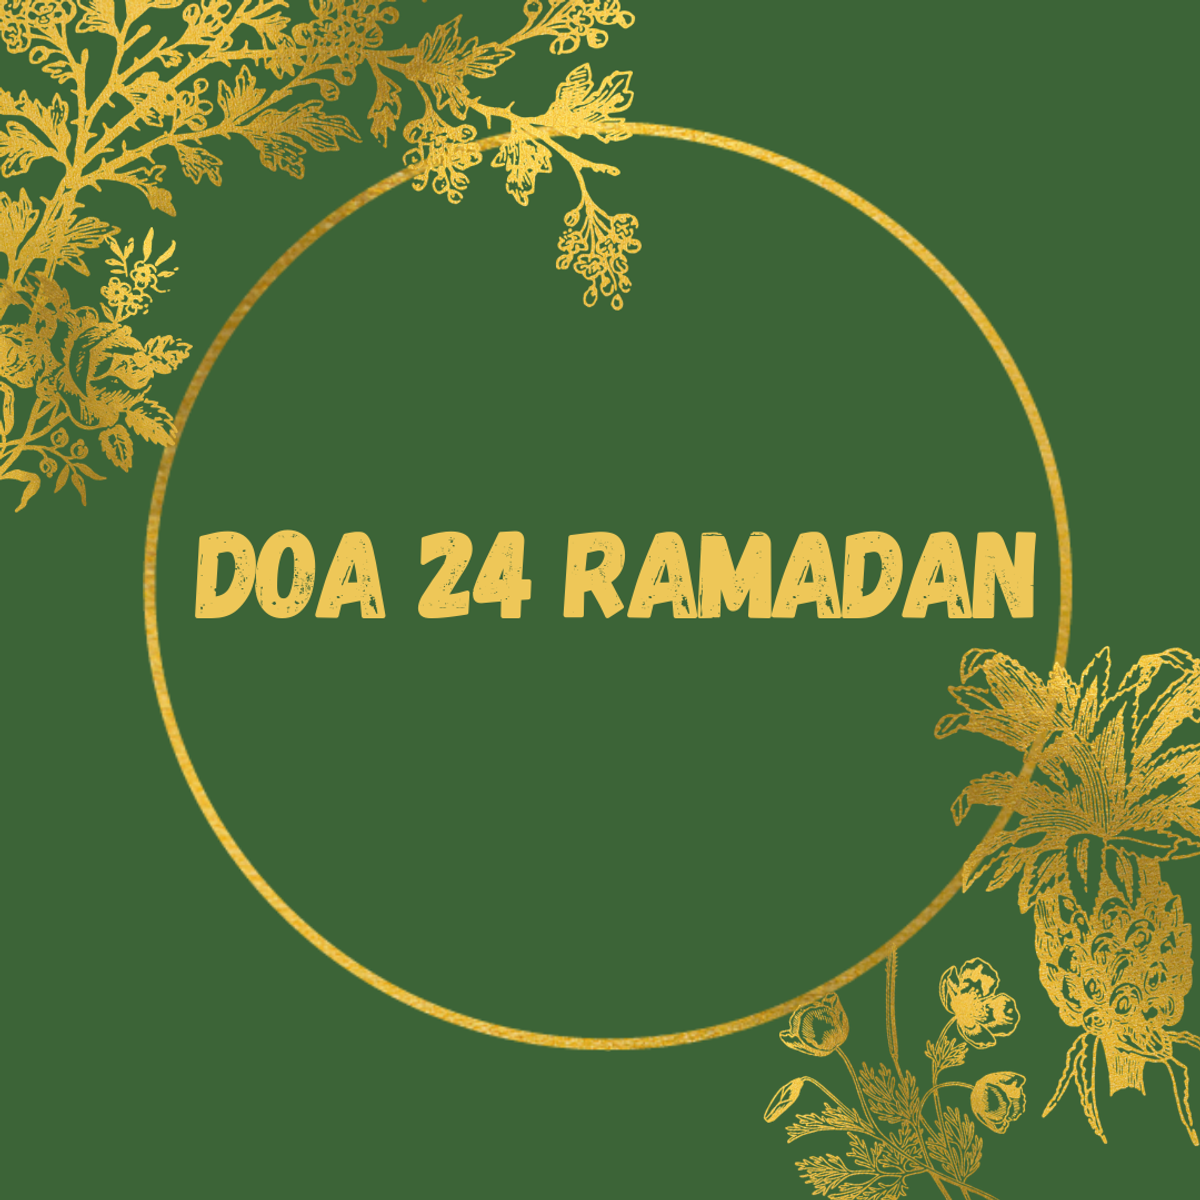 DOA RAMADHAN 24